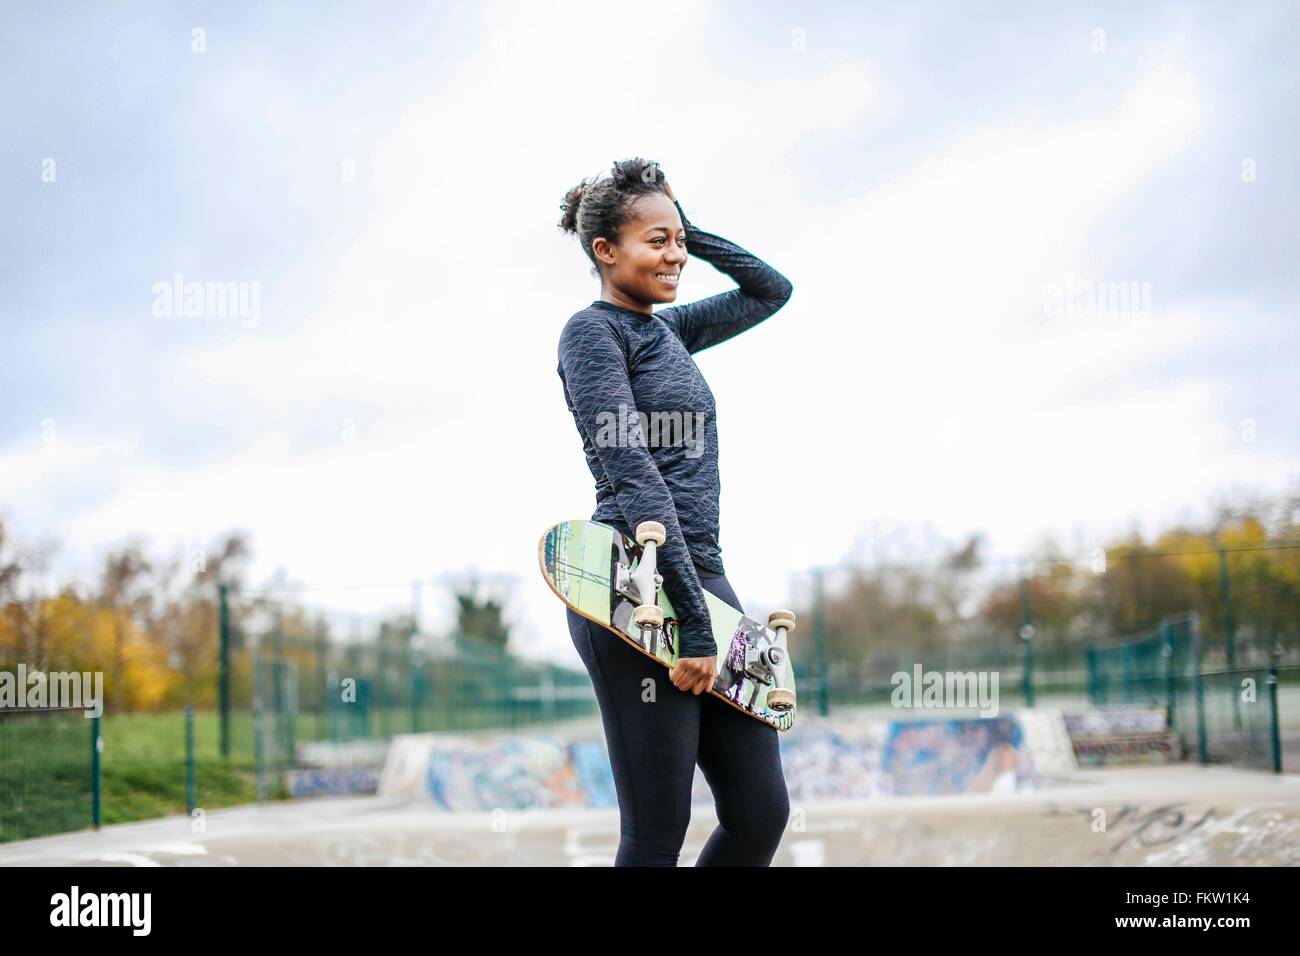 Portrait de jeune femme dans un planchodrome skateboarder Banque D'Images